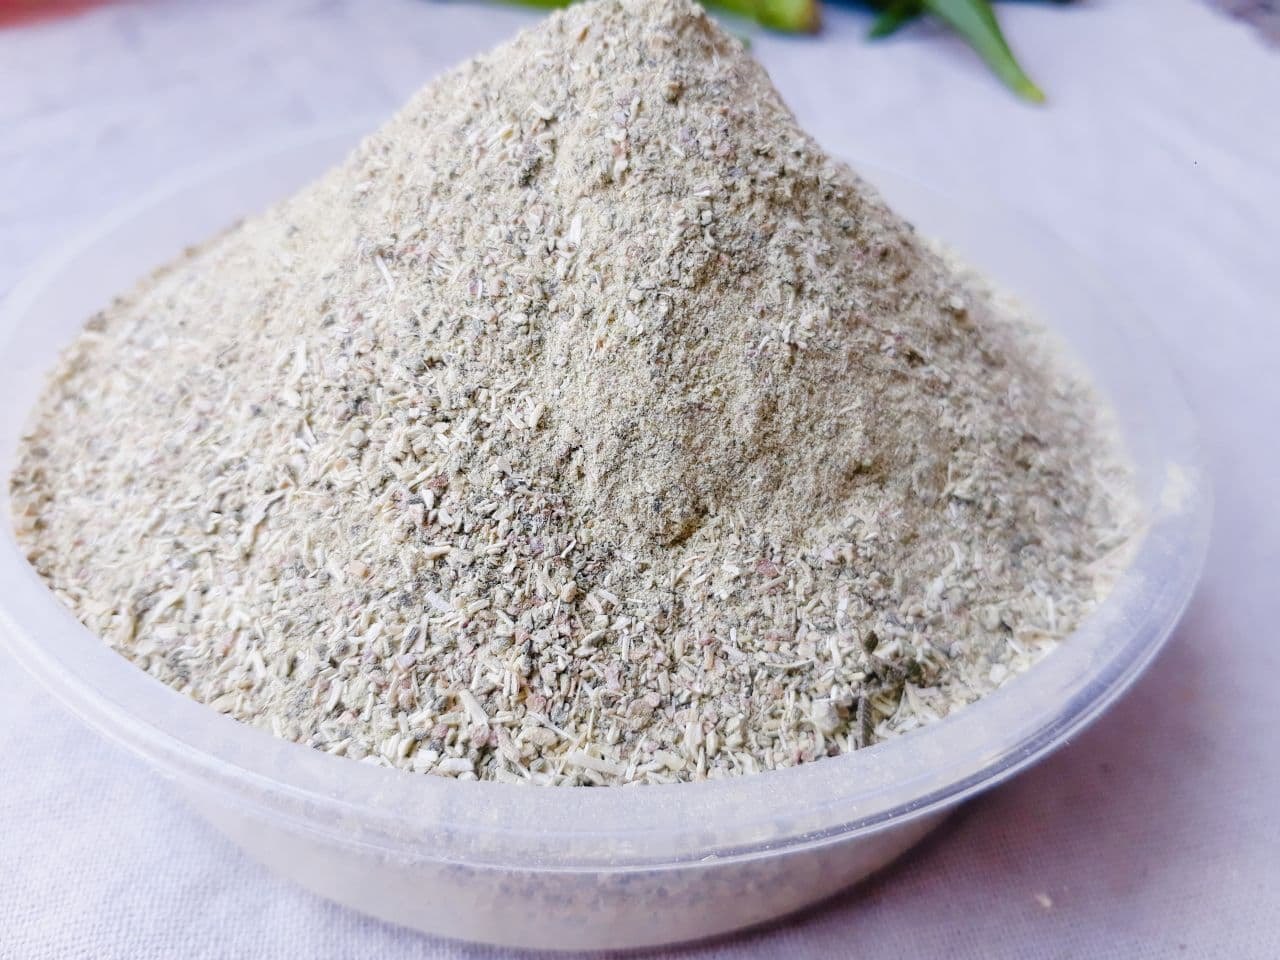 Bhindi Powder (Dhatu Rog )